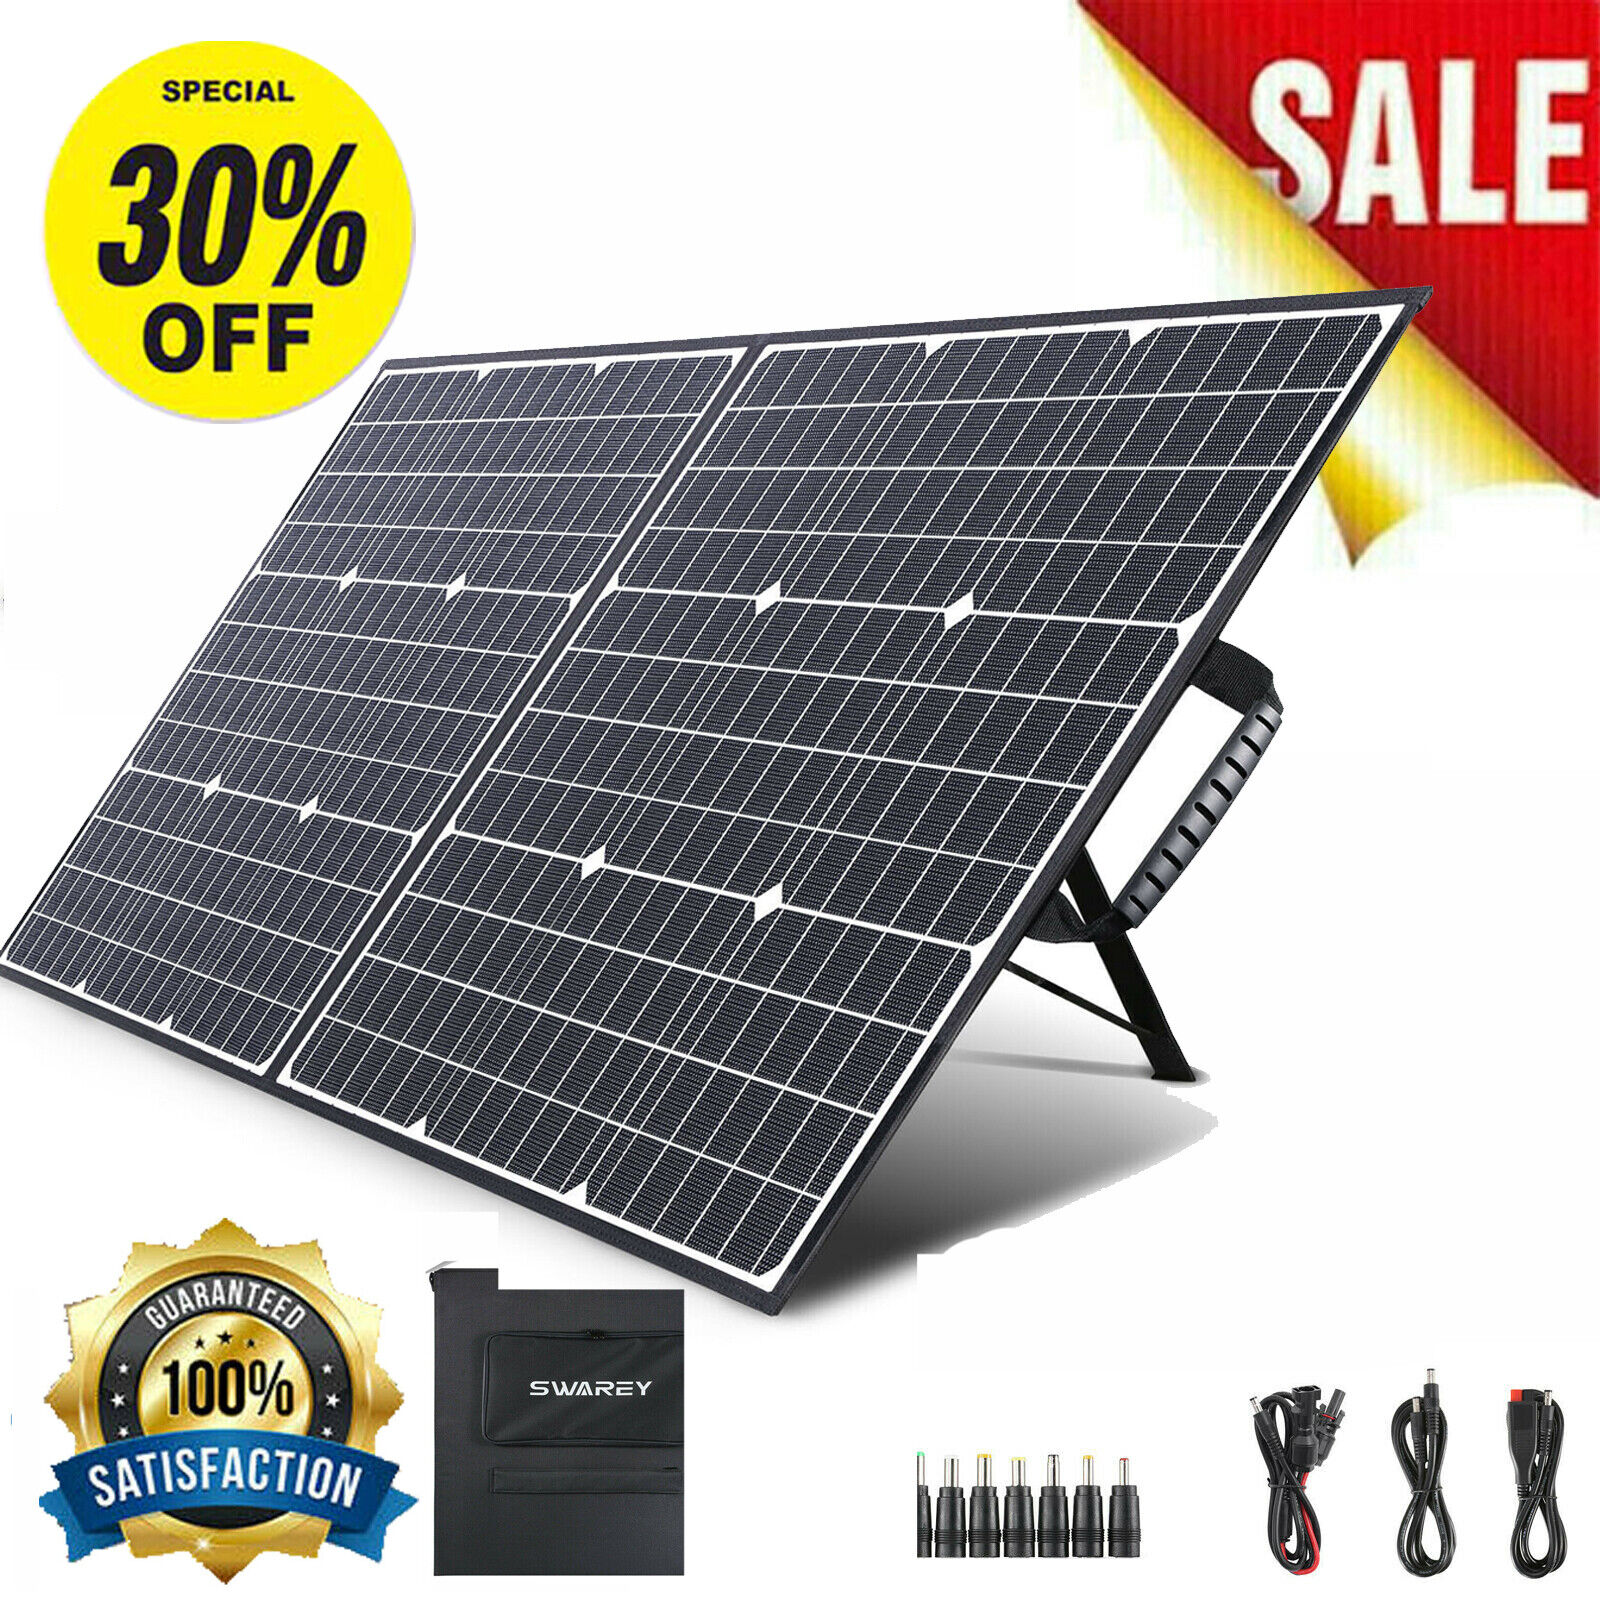 Foldable 100W Solar Panel for Camp SWAREY Suaoki Jackery Power Station Generator